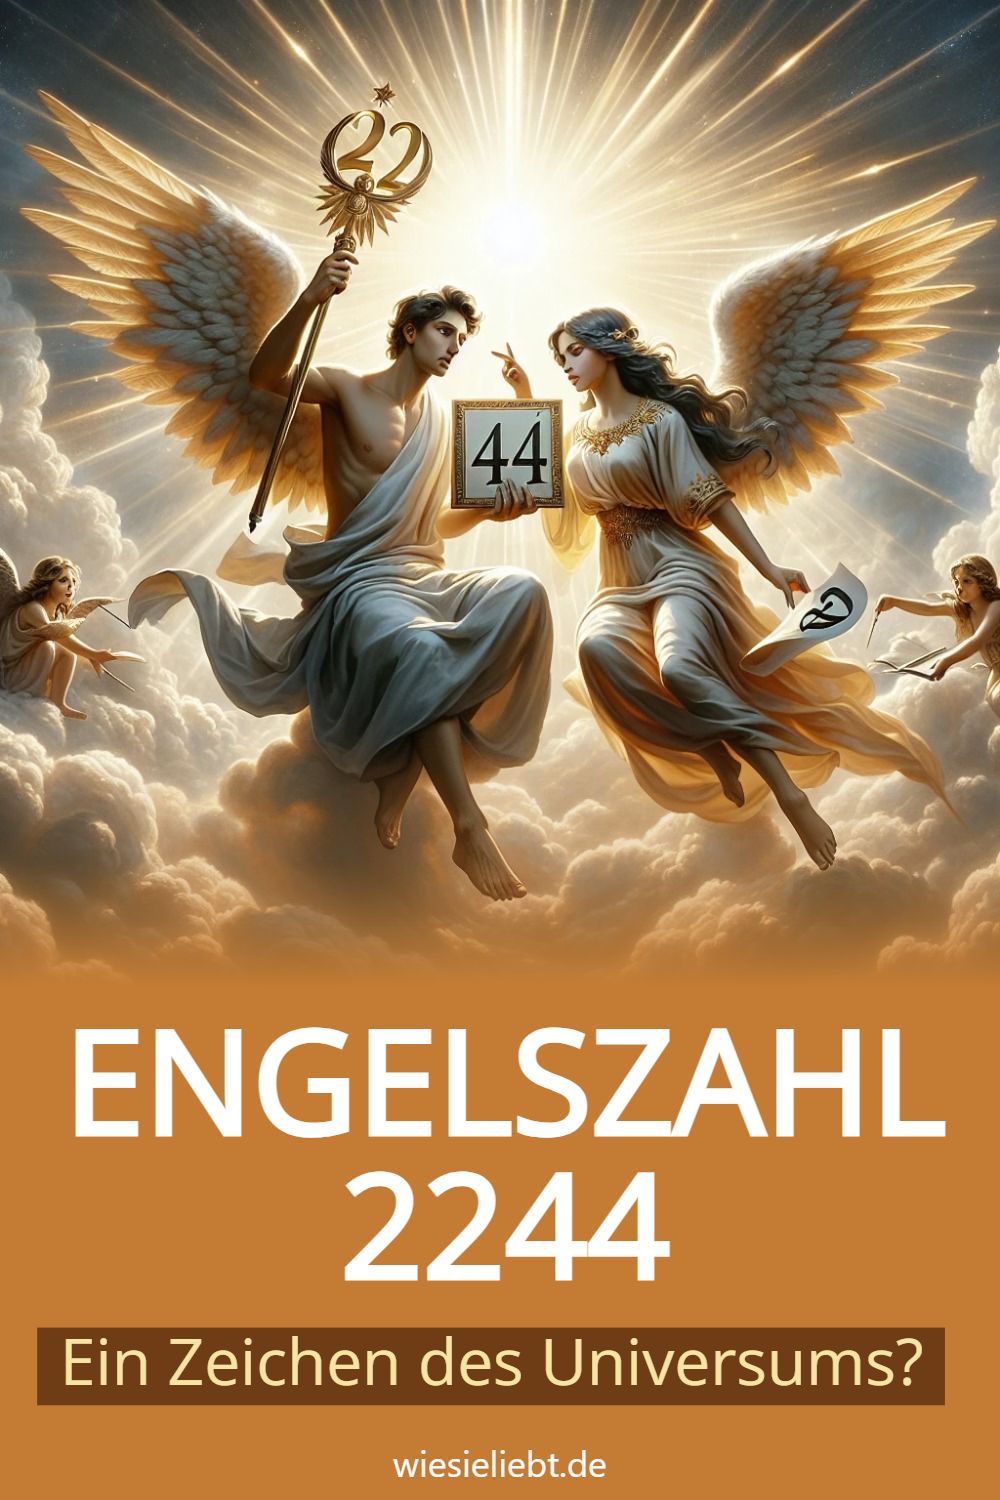 ENGELSZAHL 2244: Ein Zeichen des Universums?